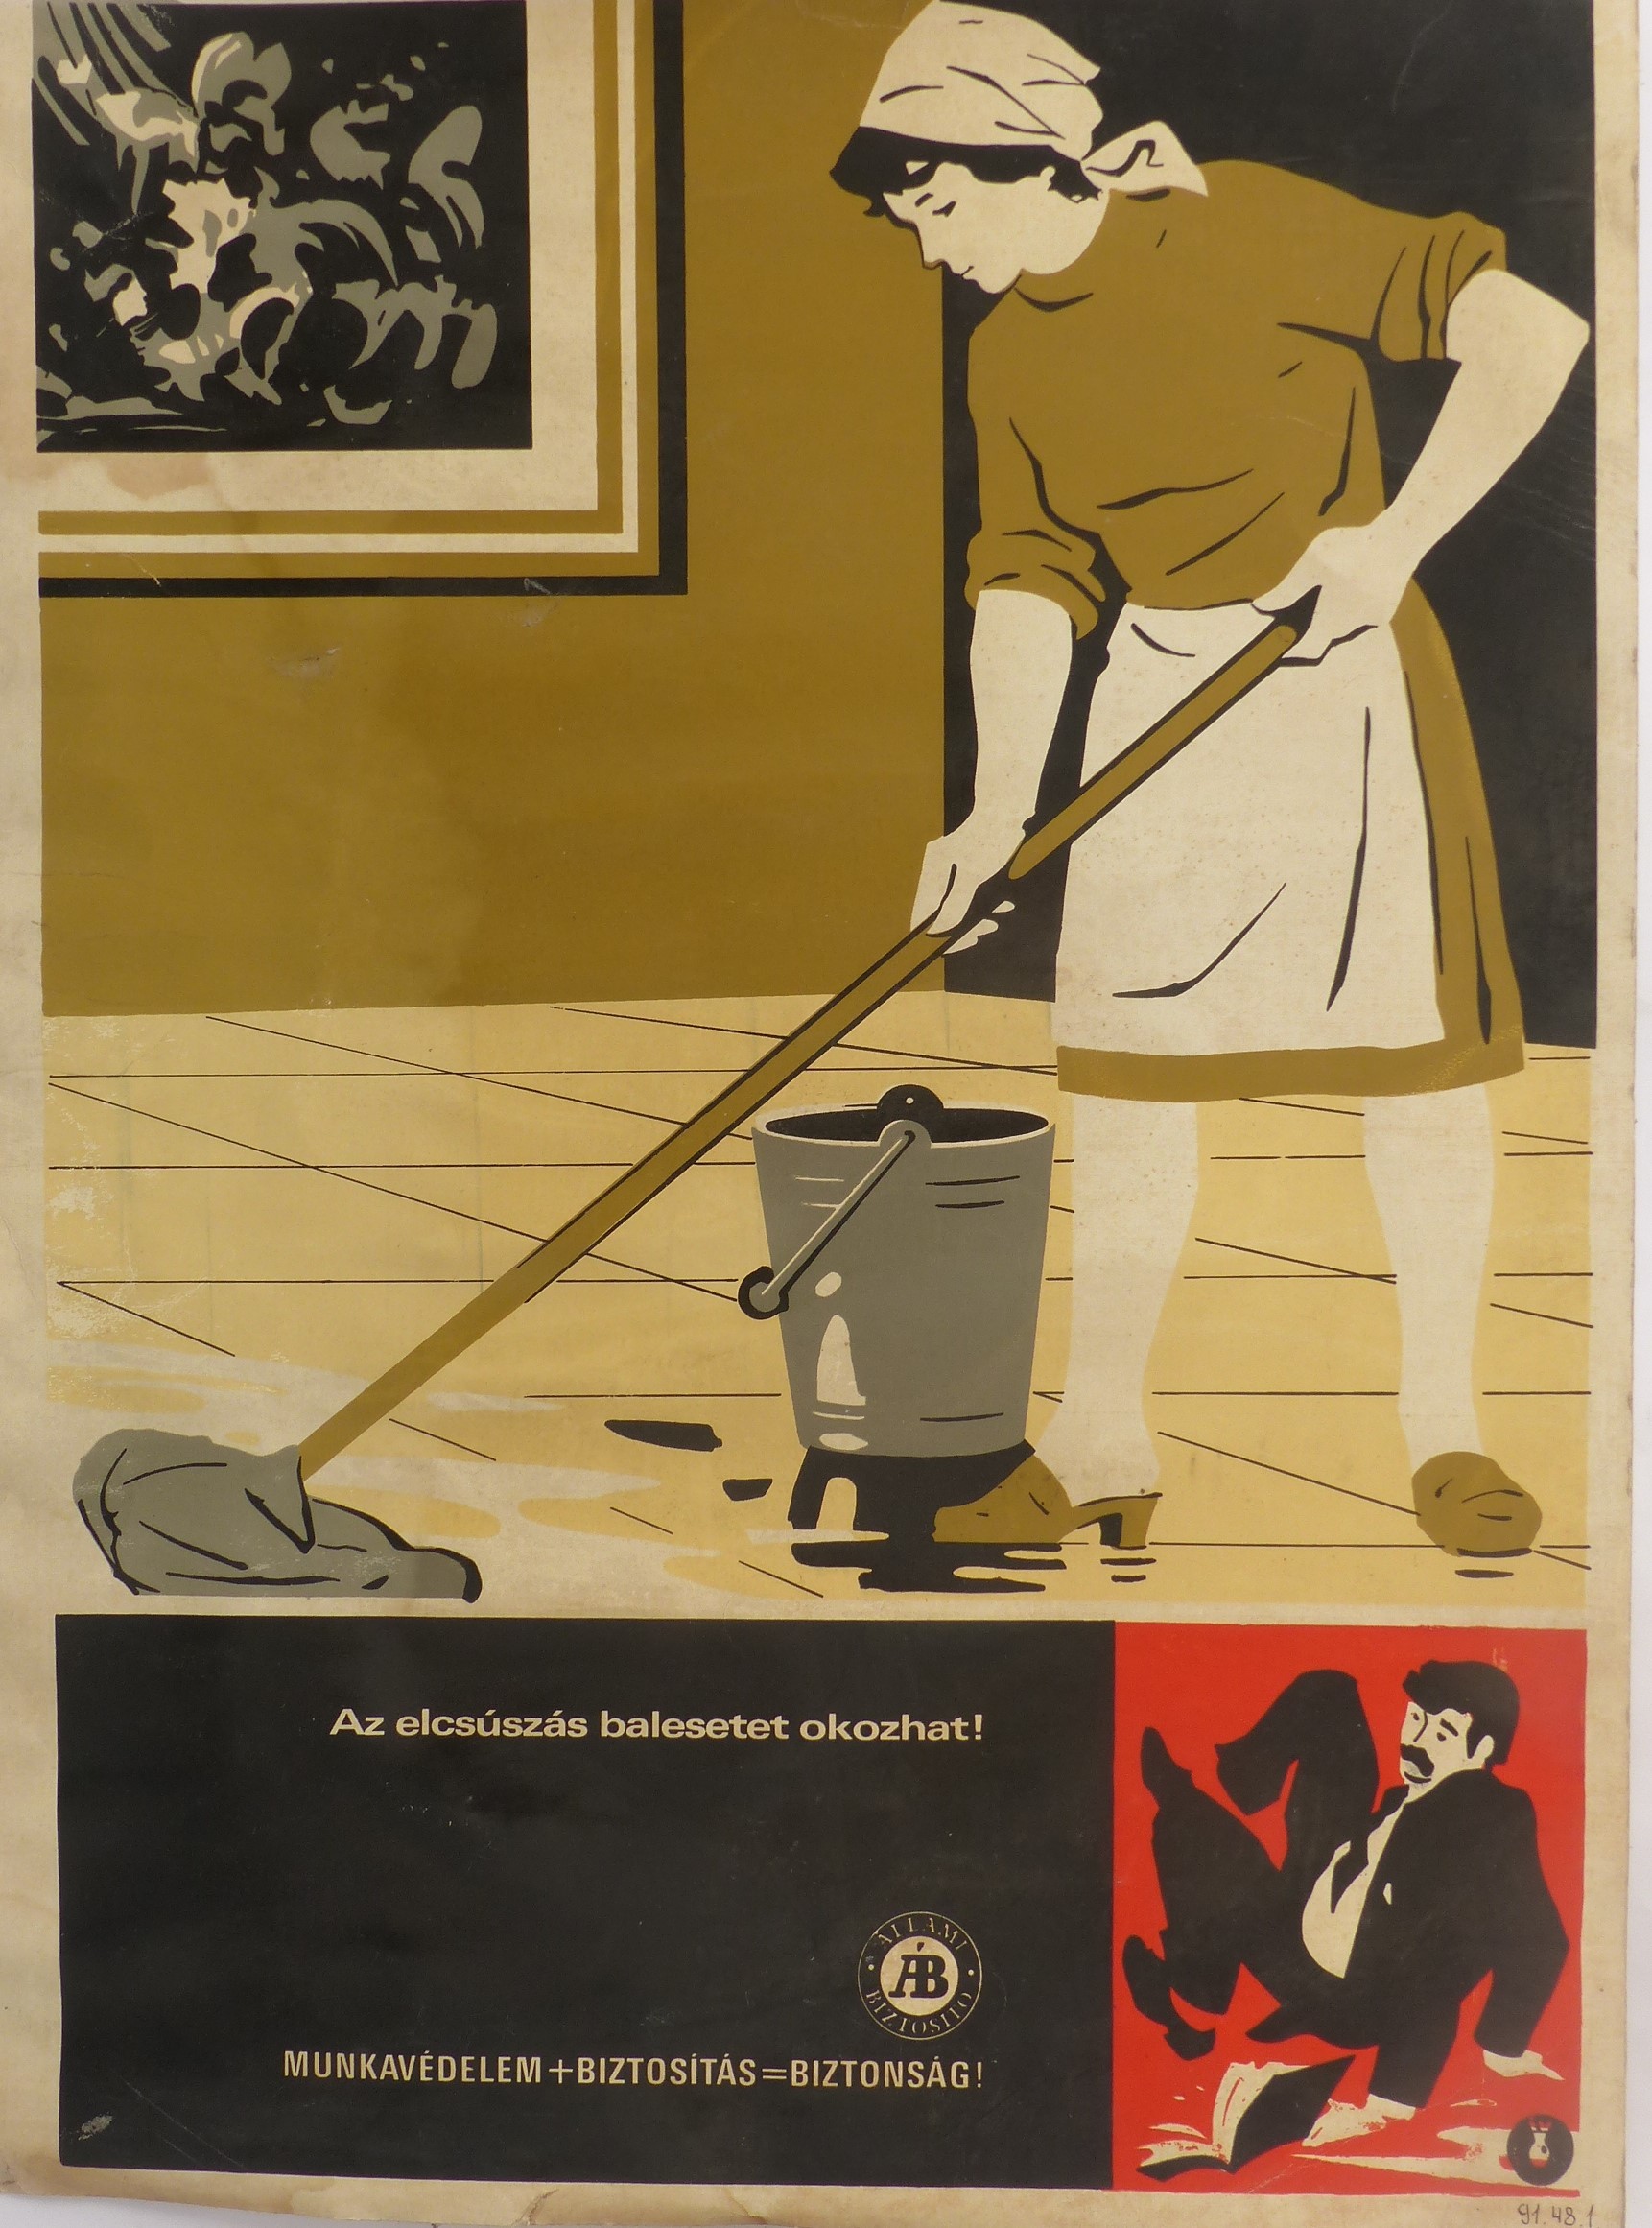 Az elcsúszás balesetet okozhat című plakát (Tapolcai Városi Múzeum CC BY-NC-SA)